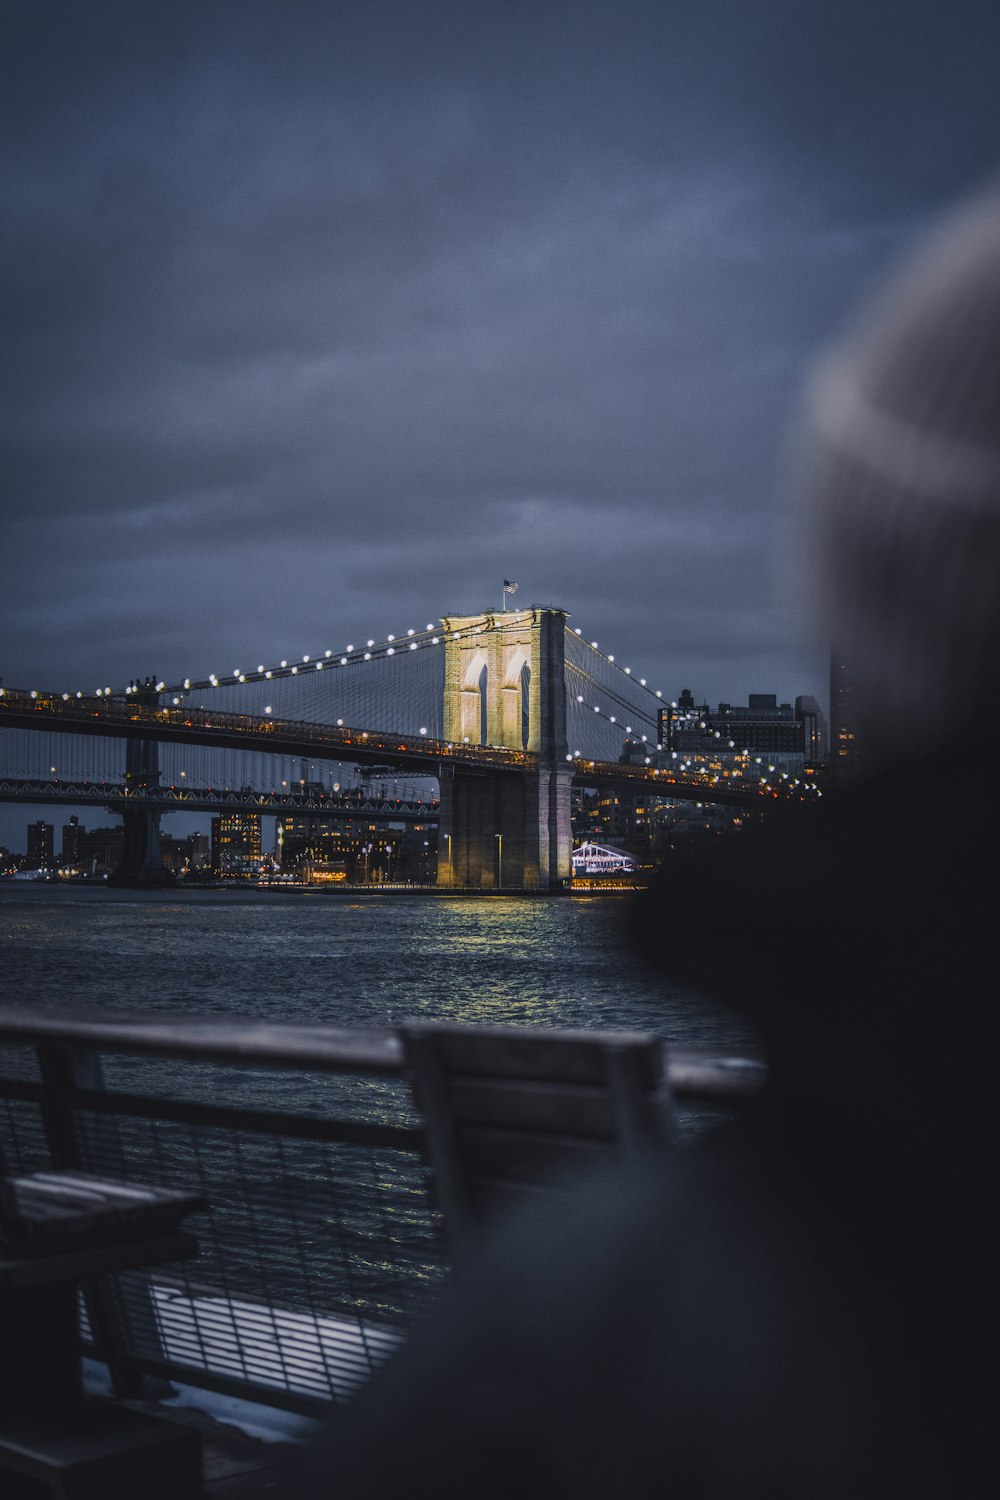 uma pessoa sentada em um banco olhando para uma ponte